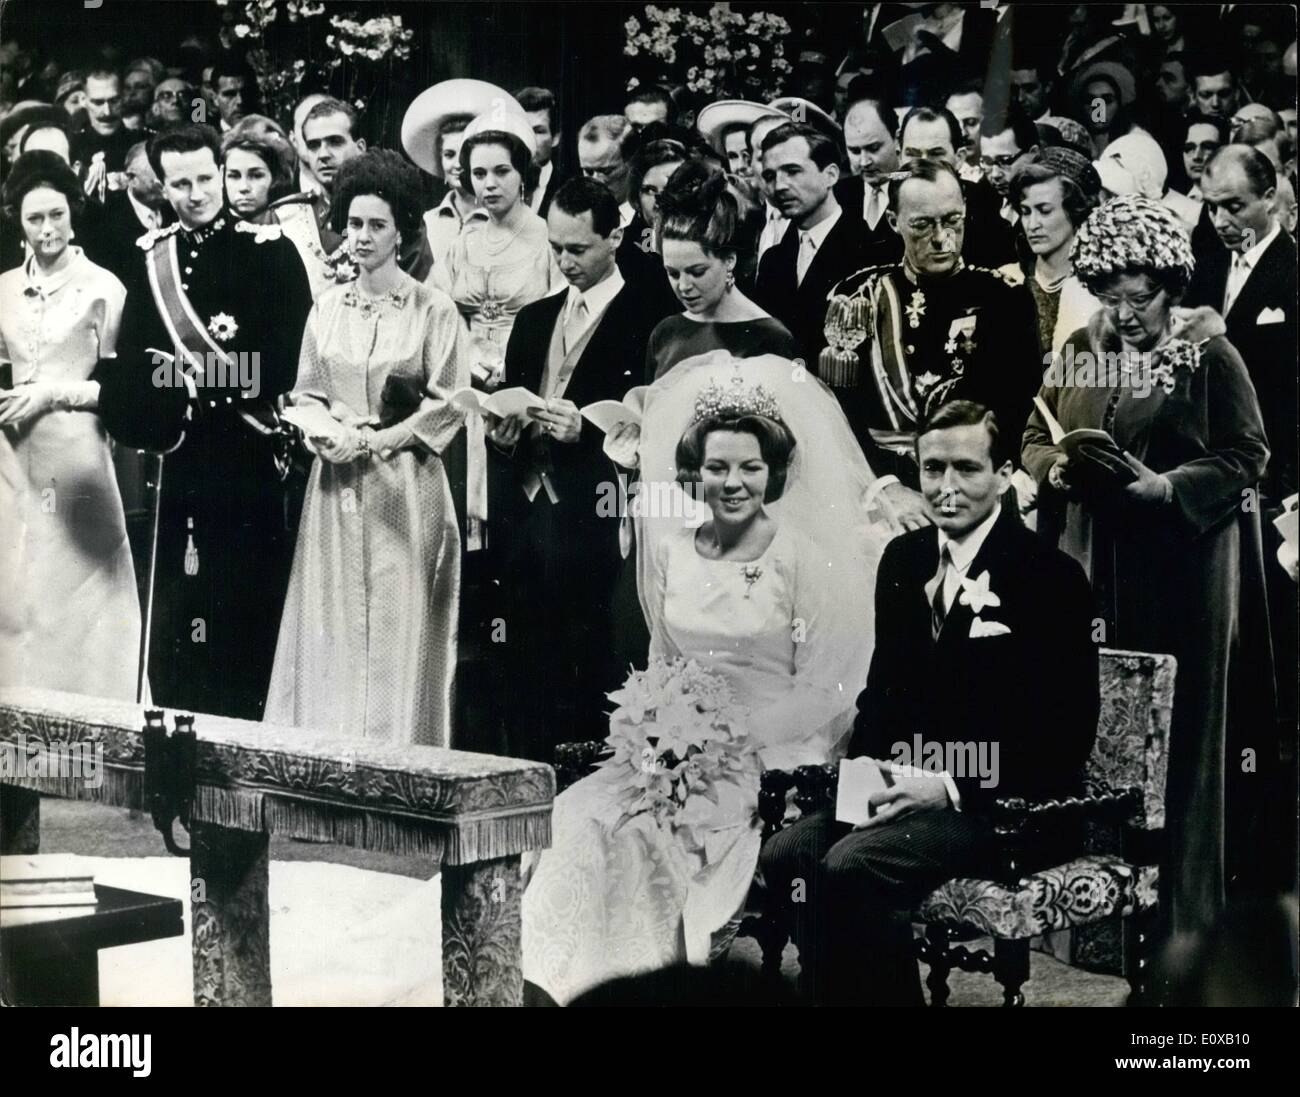 Mar. 03, 1966 - Mariage Royal à Amsterdam : la princesse Beatrix des Pays- Bas était marié à Amsterdam hier de Claus von Amsberg. La cérémonie civile  à la mairie a été suivie